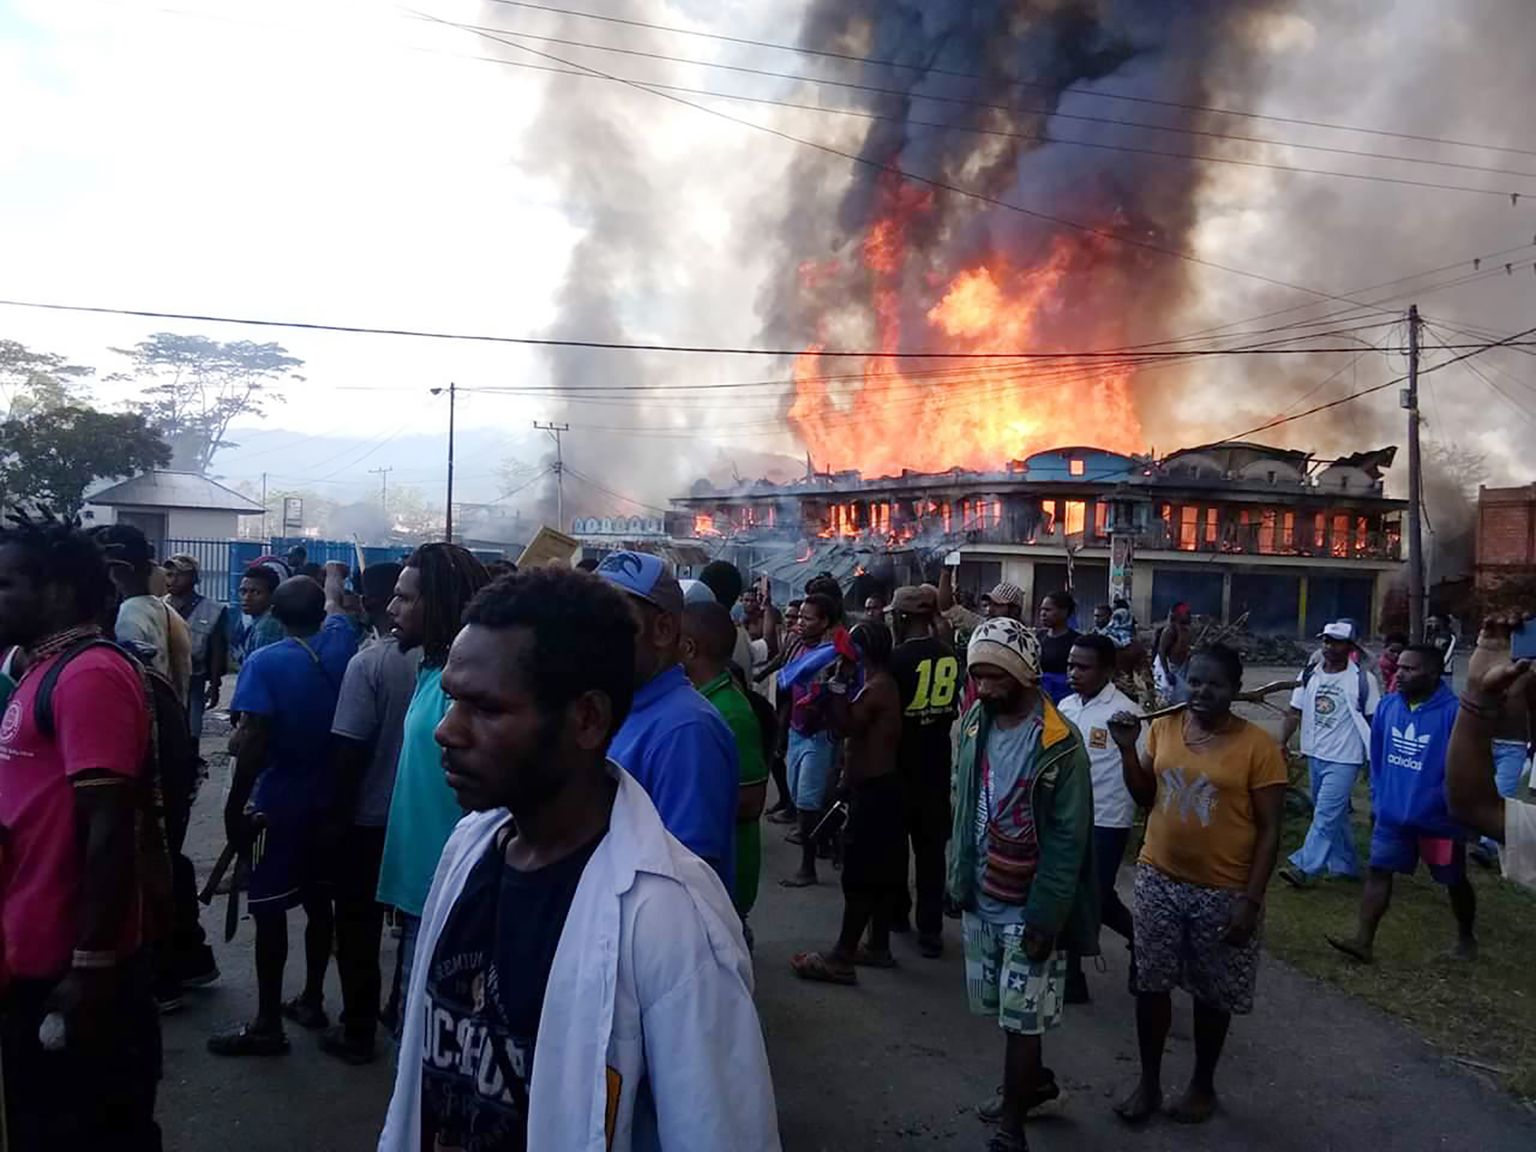 Väidetava rassistliku kommentaari tõttu Paapua provintsis puhkenud meeleavaldustes on hukkunud 33 inimest.